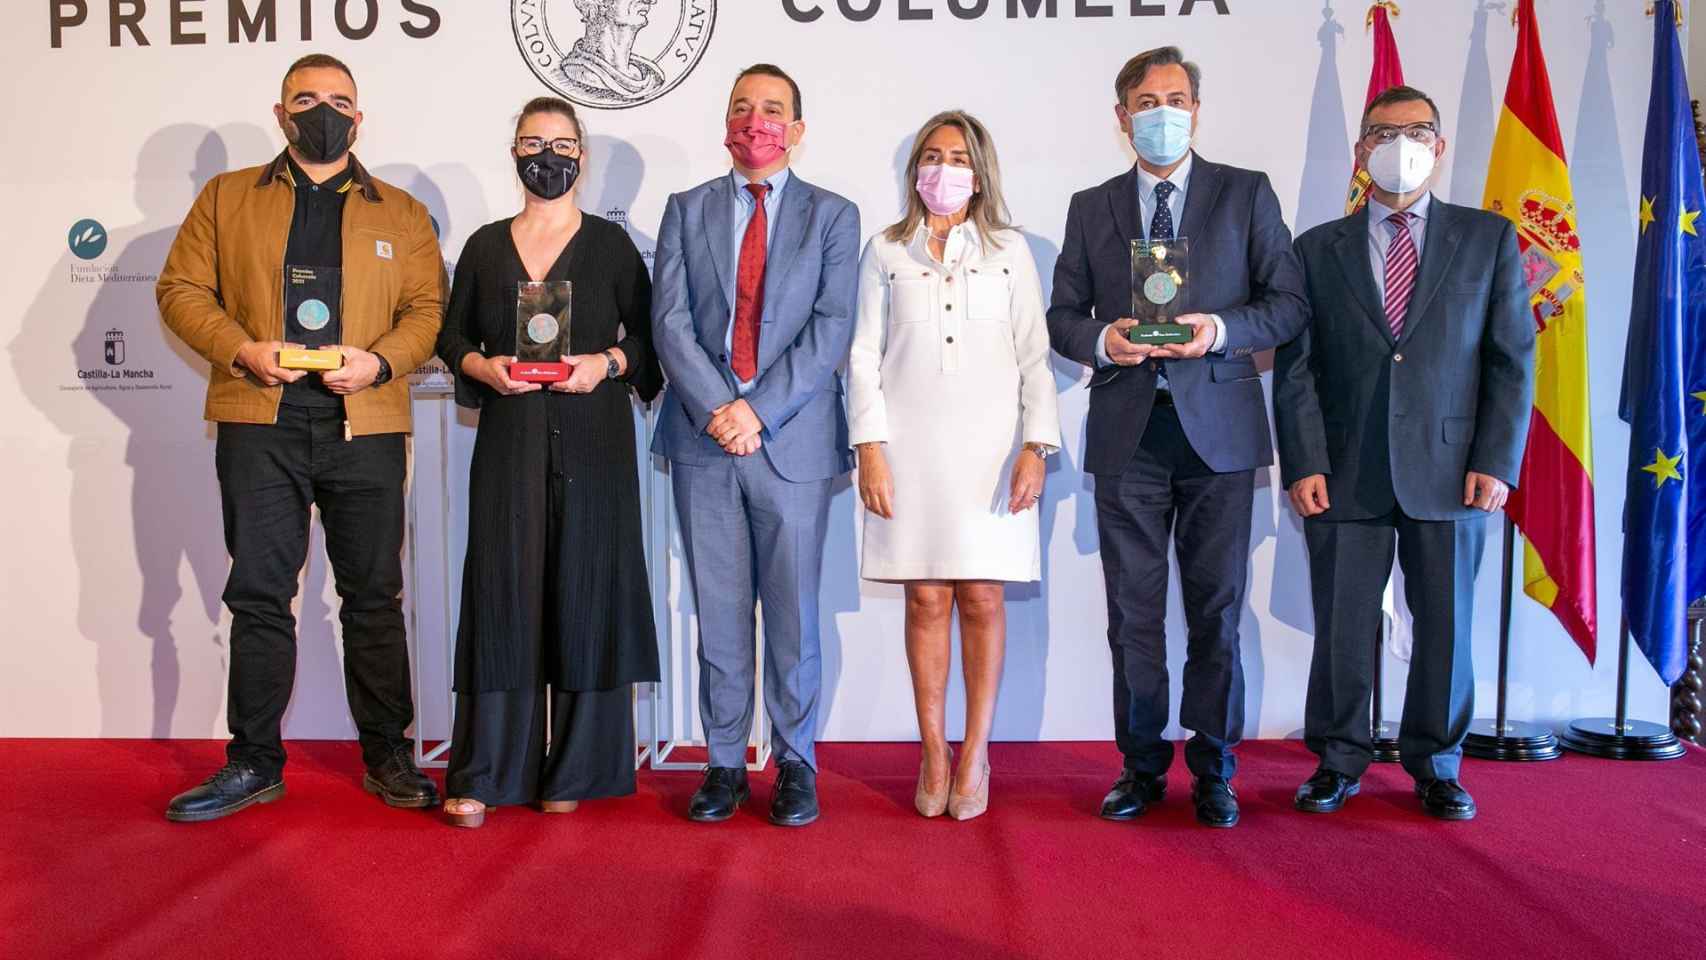 Los premios Columela defienden la tradición como sustento de la modernidad